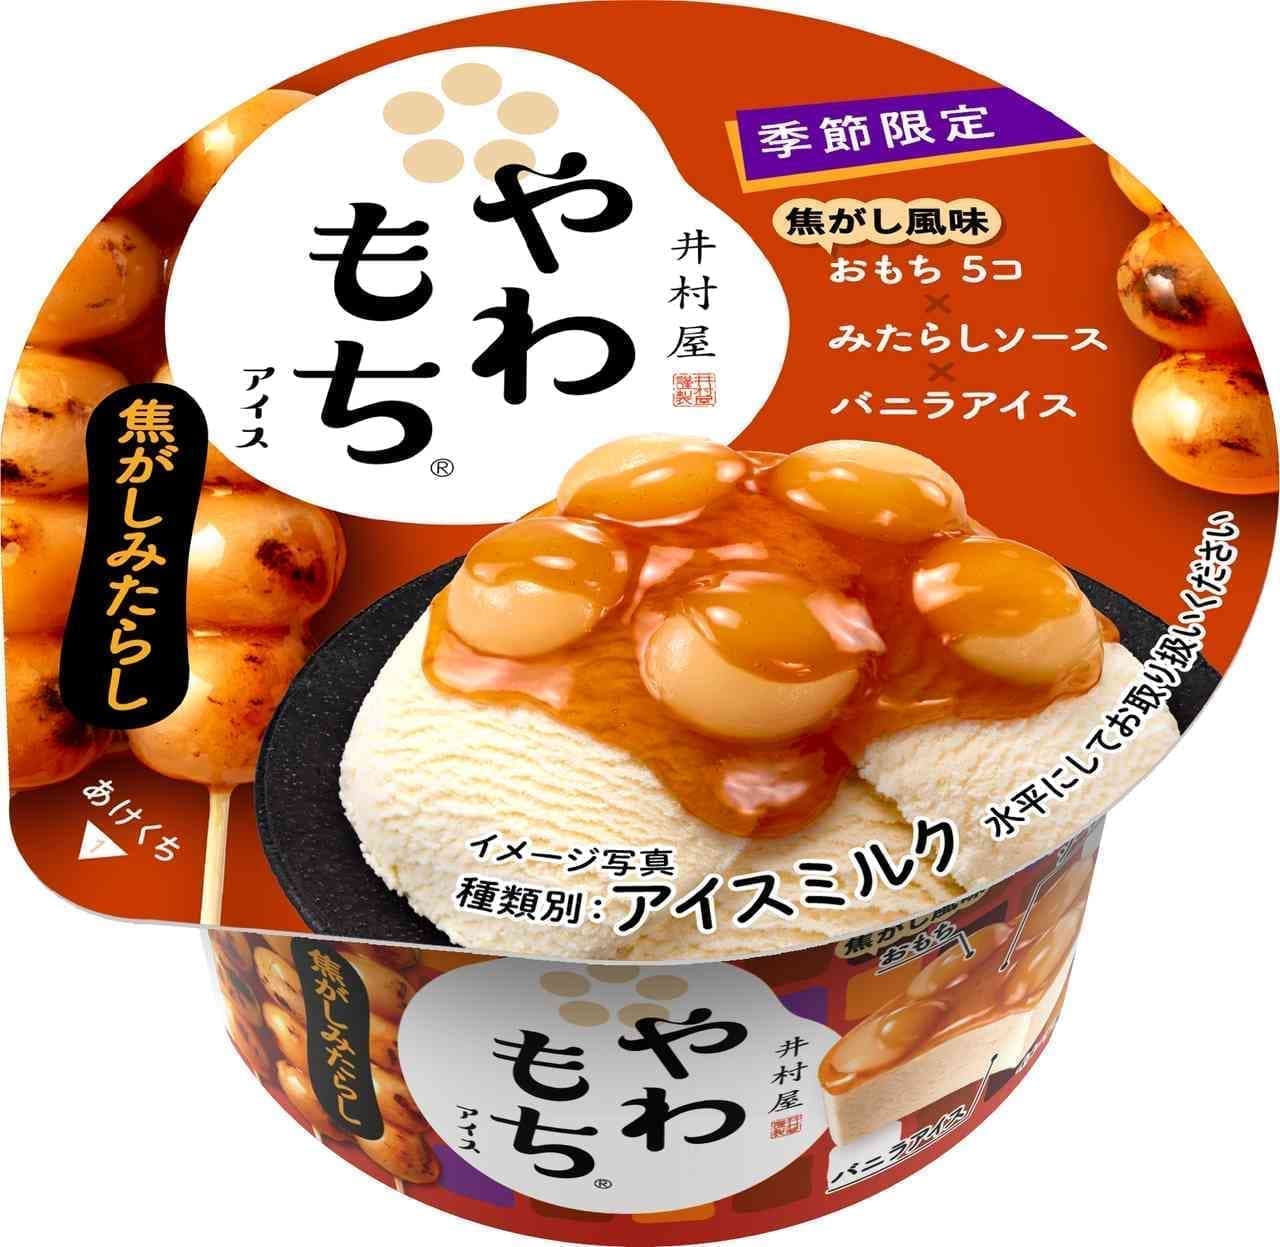 Imuraya "Yawamochi Ice Cream Burnt Mitarashi